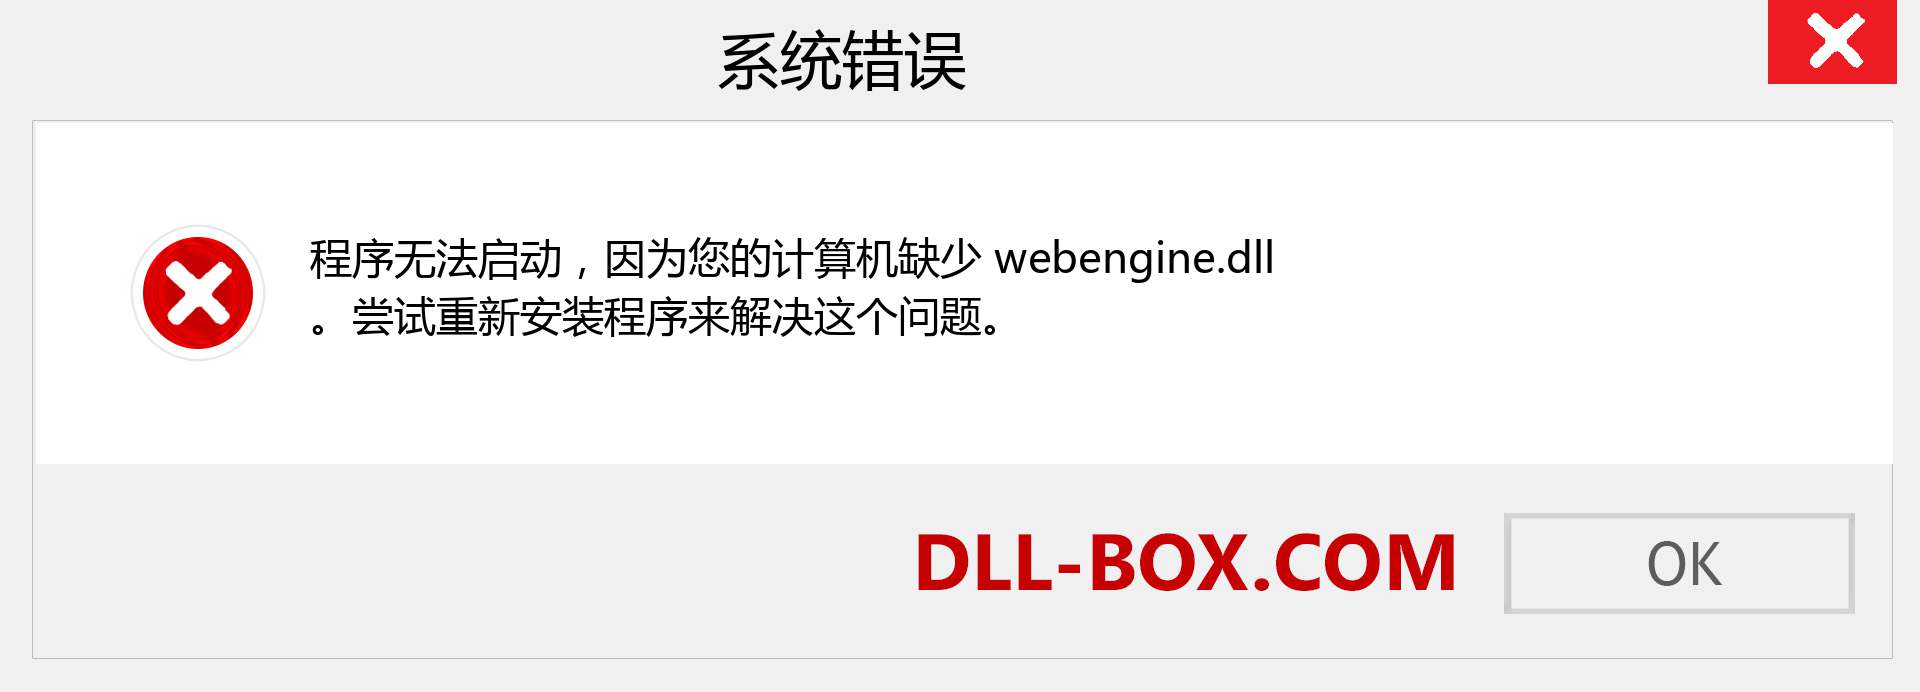 webengine.dll 文件丢失？。 适用于 Windows 7、8、10 的下载 - 修复 Windows、照片、图像上的 webengine dll 丢失错误